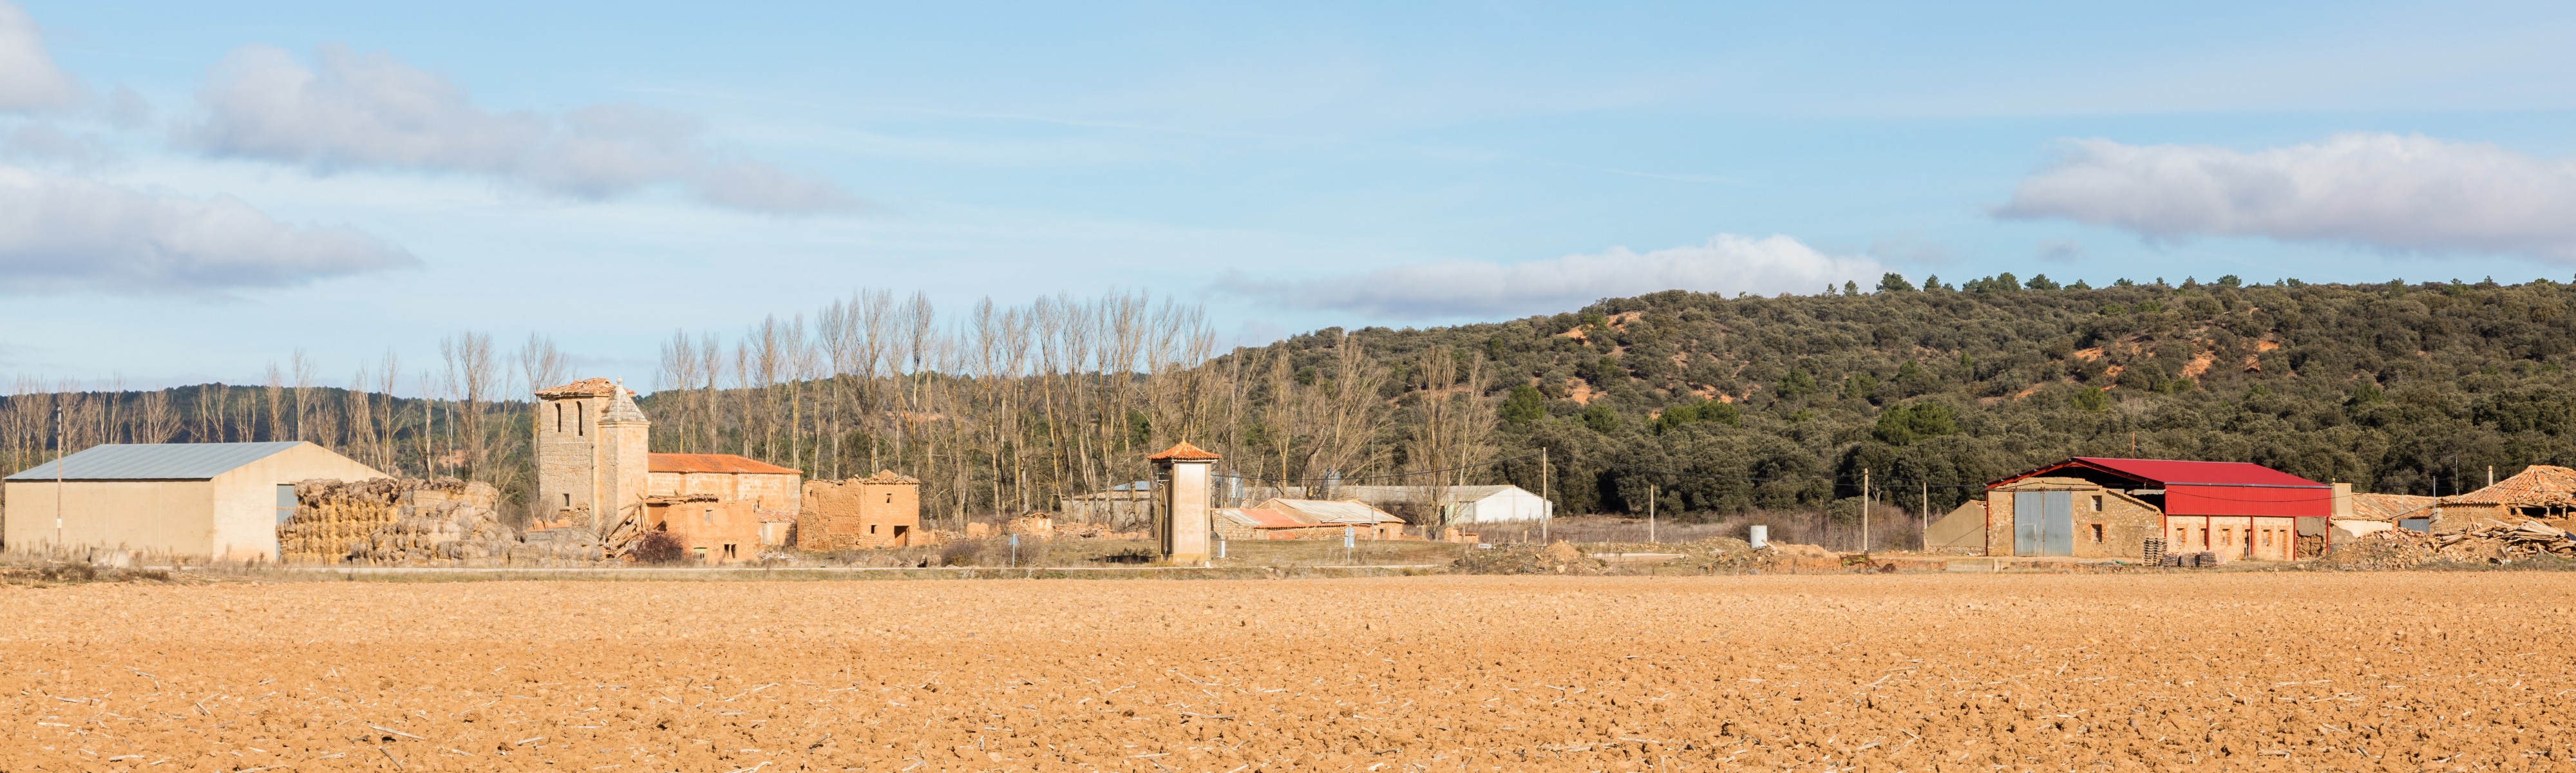 Baniel, Soria, España, 2015-12-29, DD 65